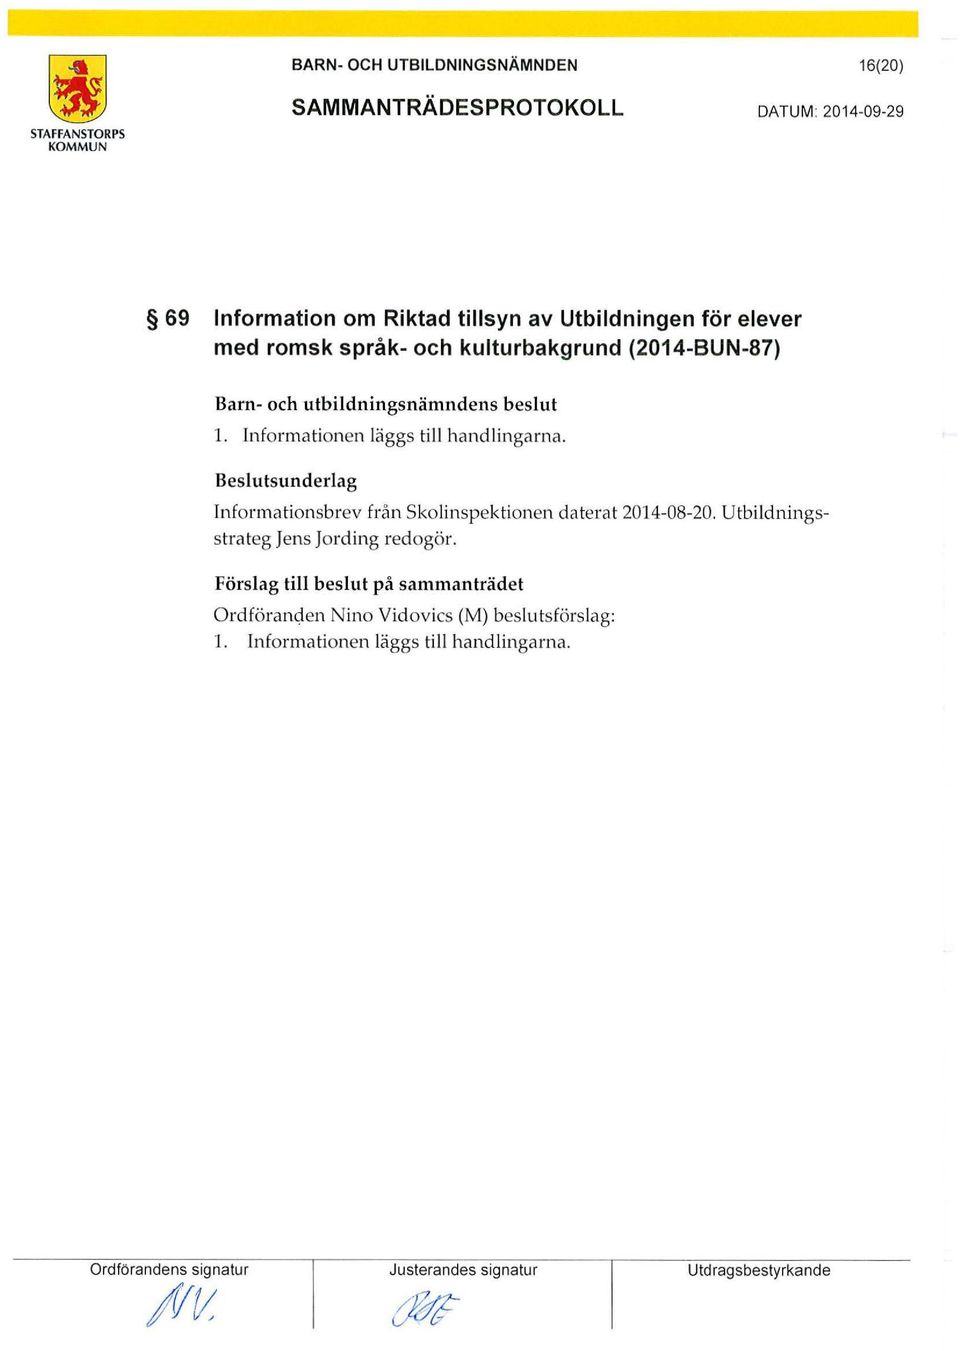 Informationsbrev från skolinspektionen daterat 2014-08-20. Utbildningsstrateg Jens Jording redogör.